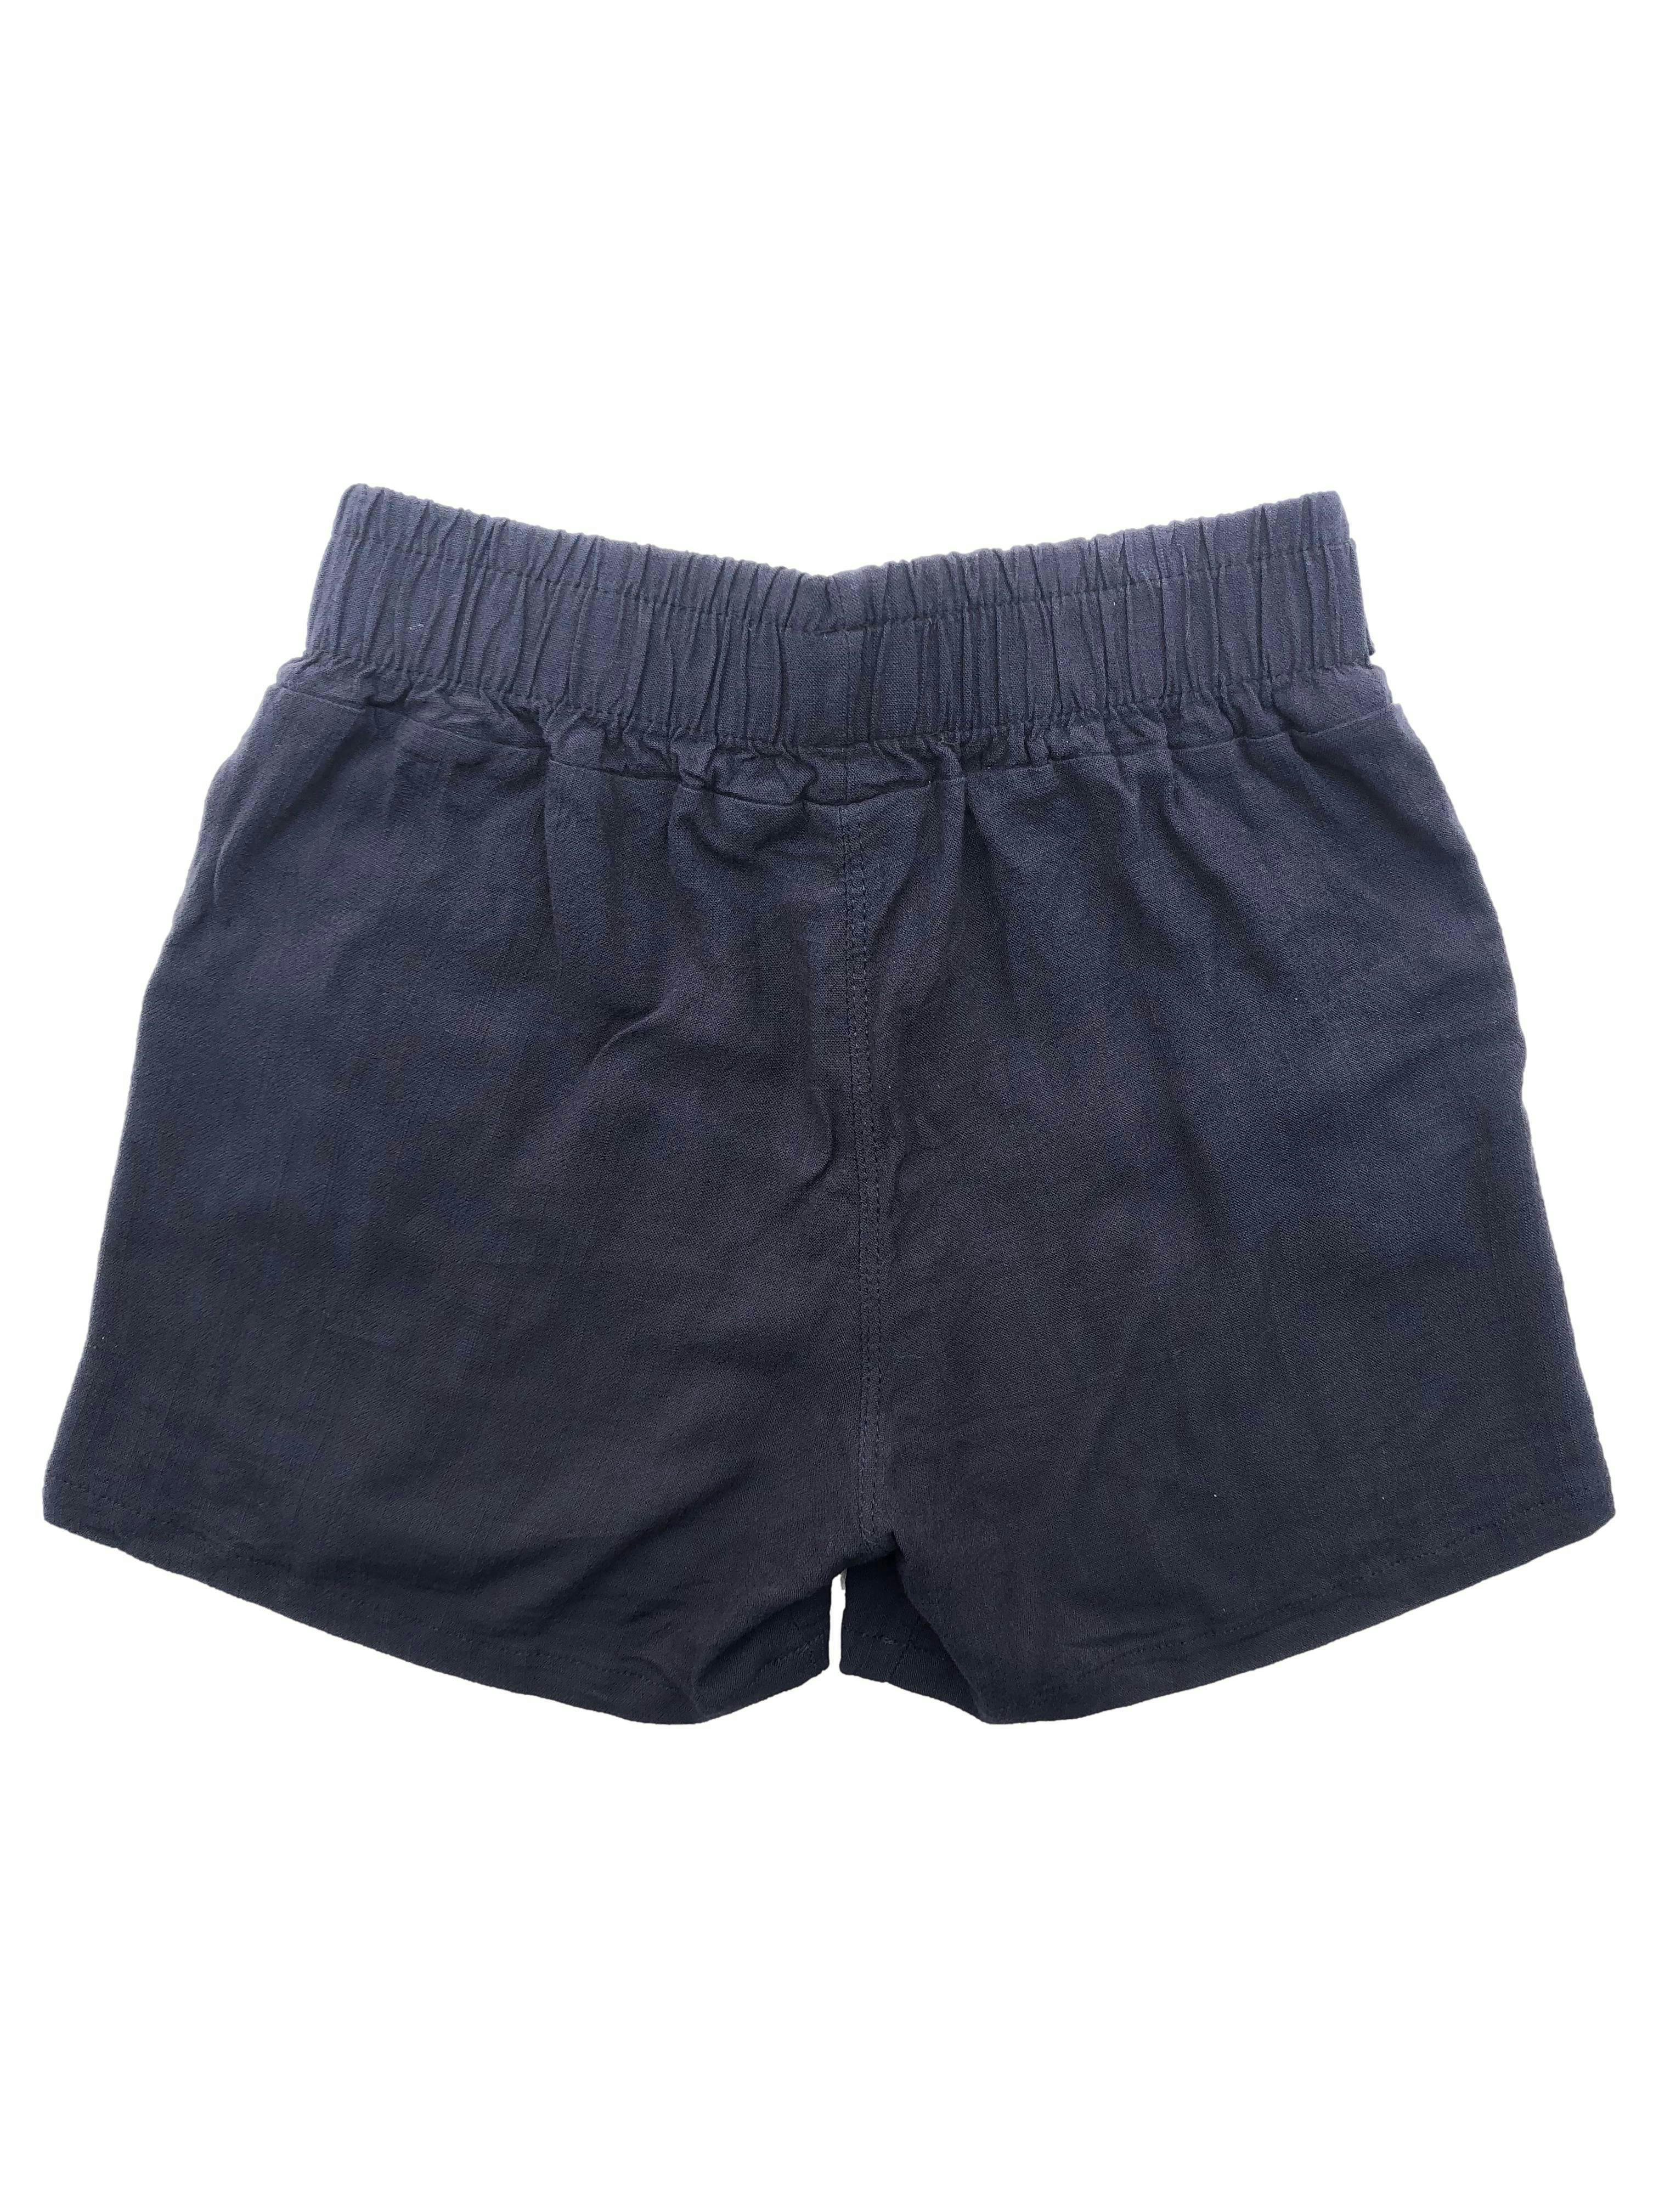 Short azul oscuro tela tipo lino con pretina elástica, cintos y bolsillos. Cintura 60cm sin estirar, Largo 30cm.